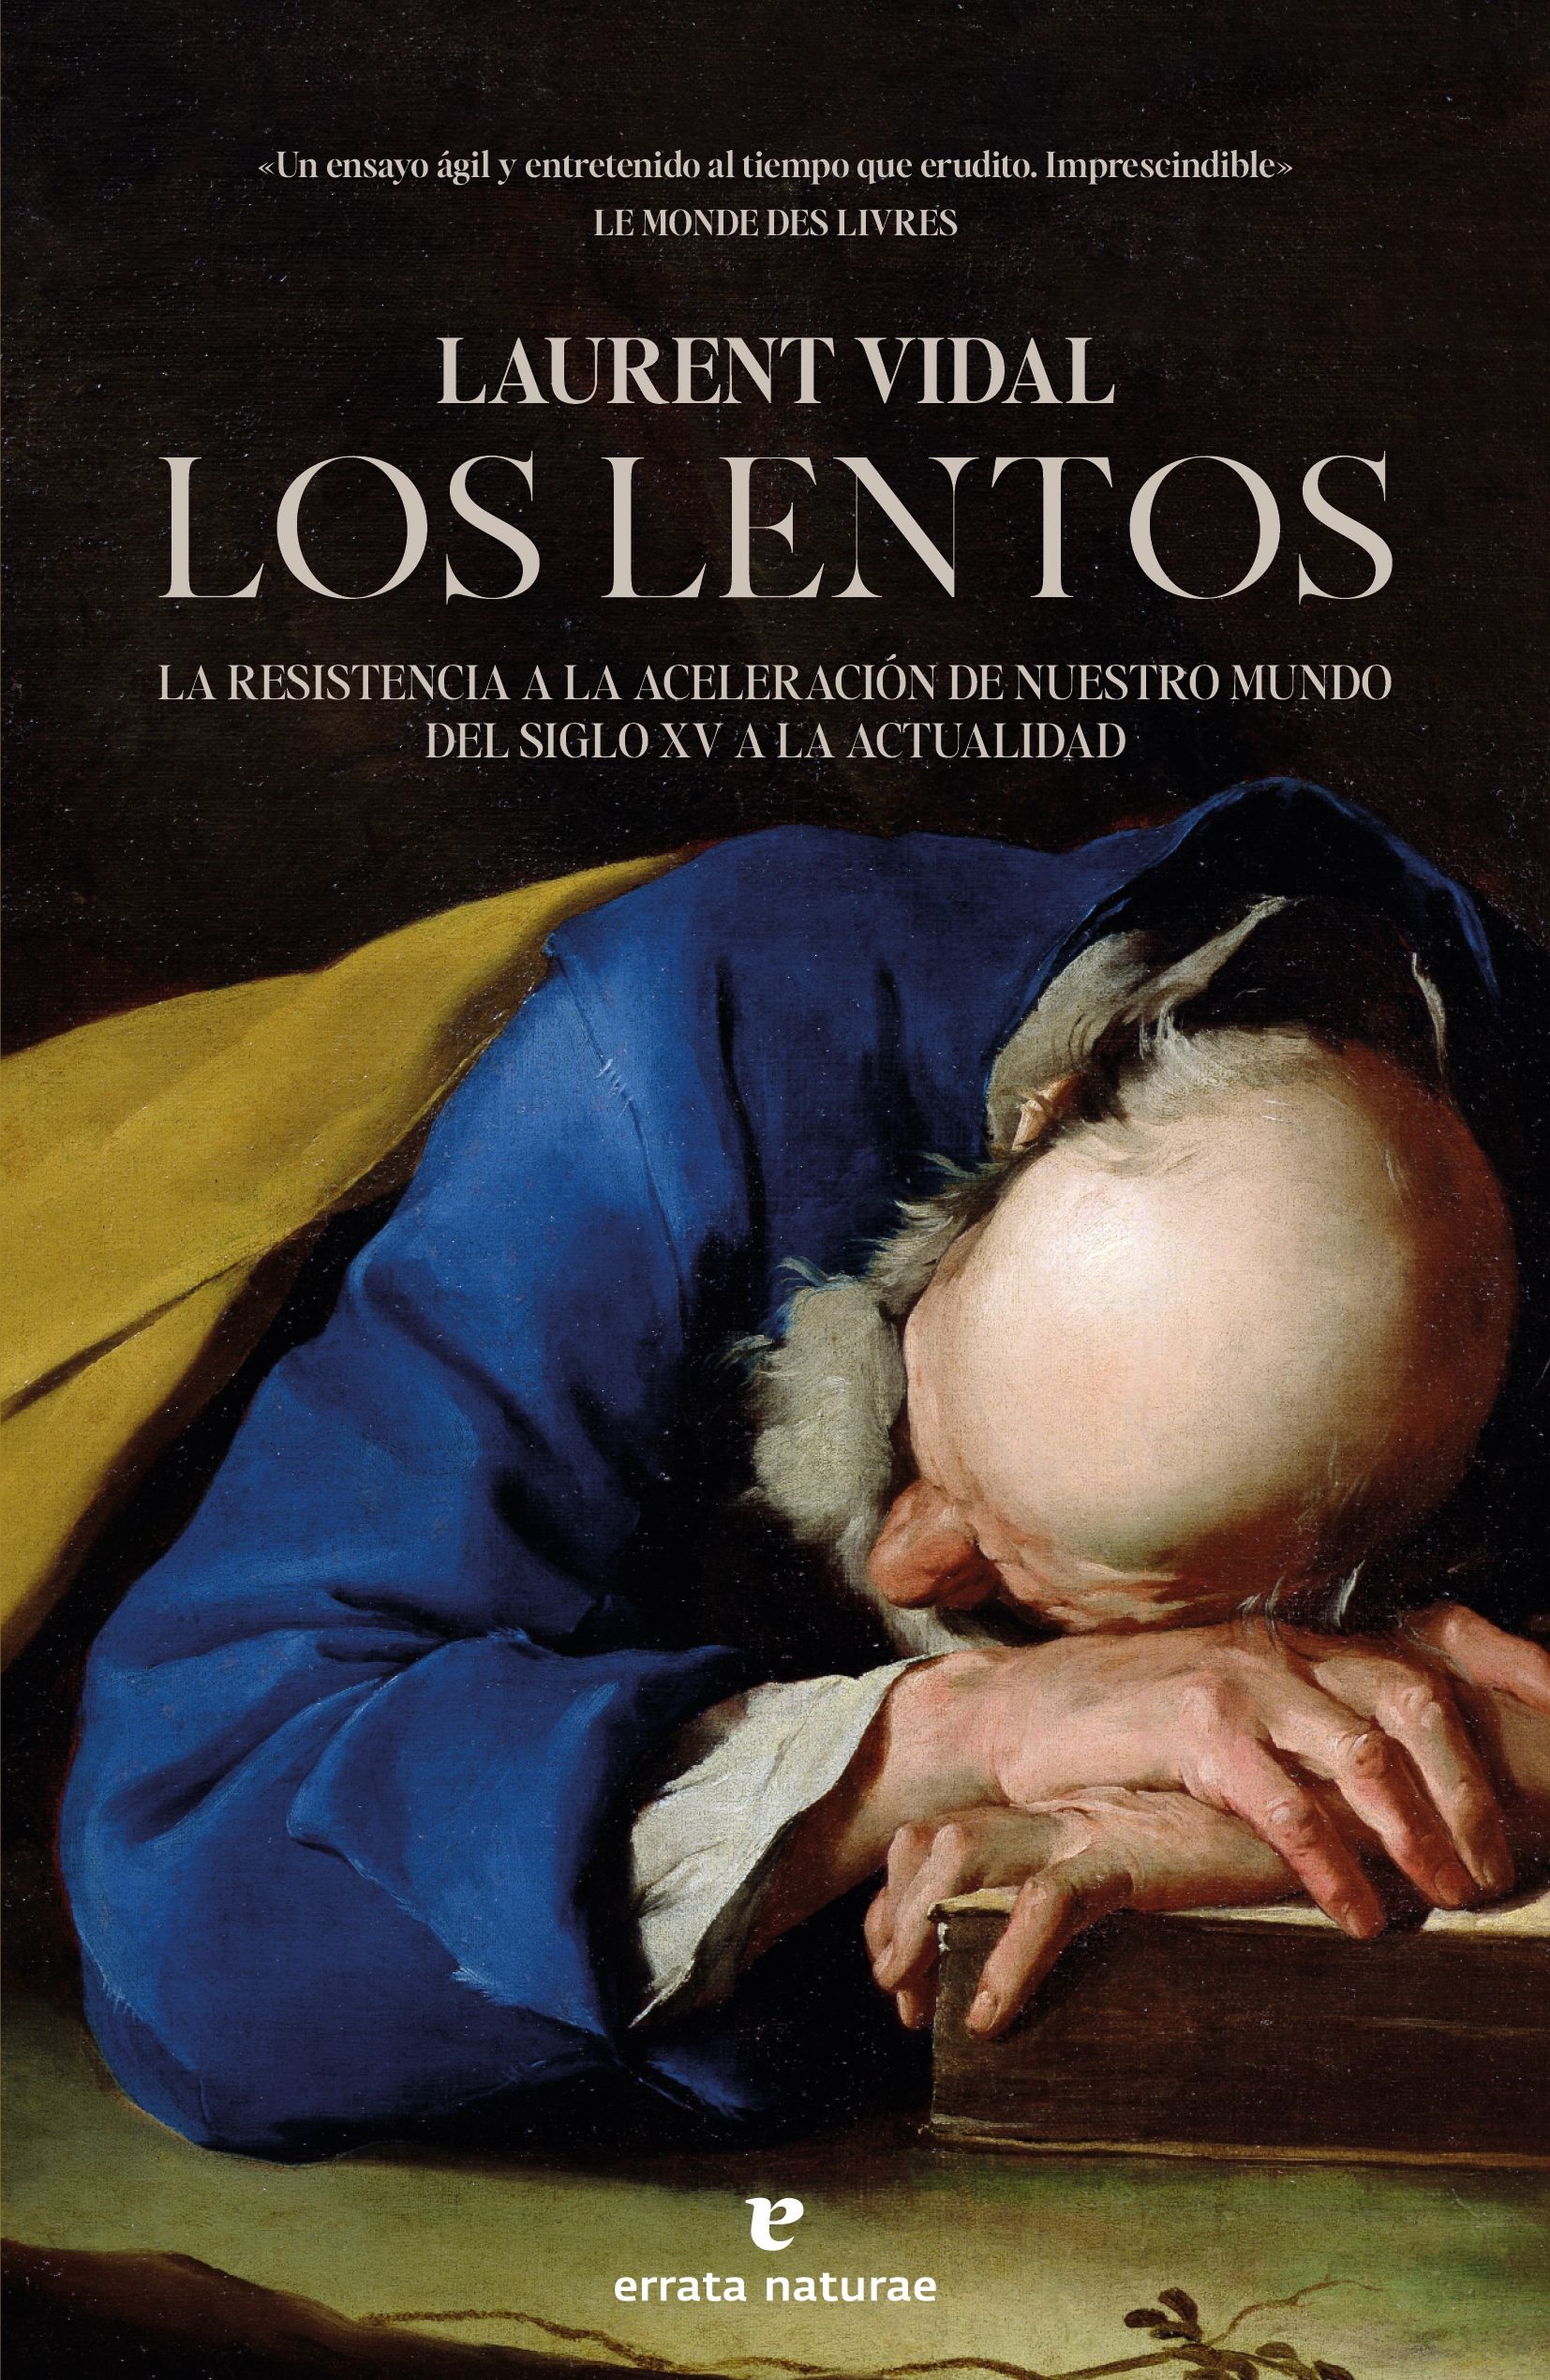 LOS LENTOS. LA RESISTENCIA A LA ACELERACIÓN DE NUESTRO MUNDO DEL SIGLO XV A LA ACTUALIDAD